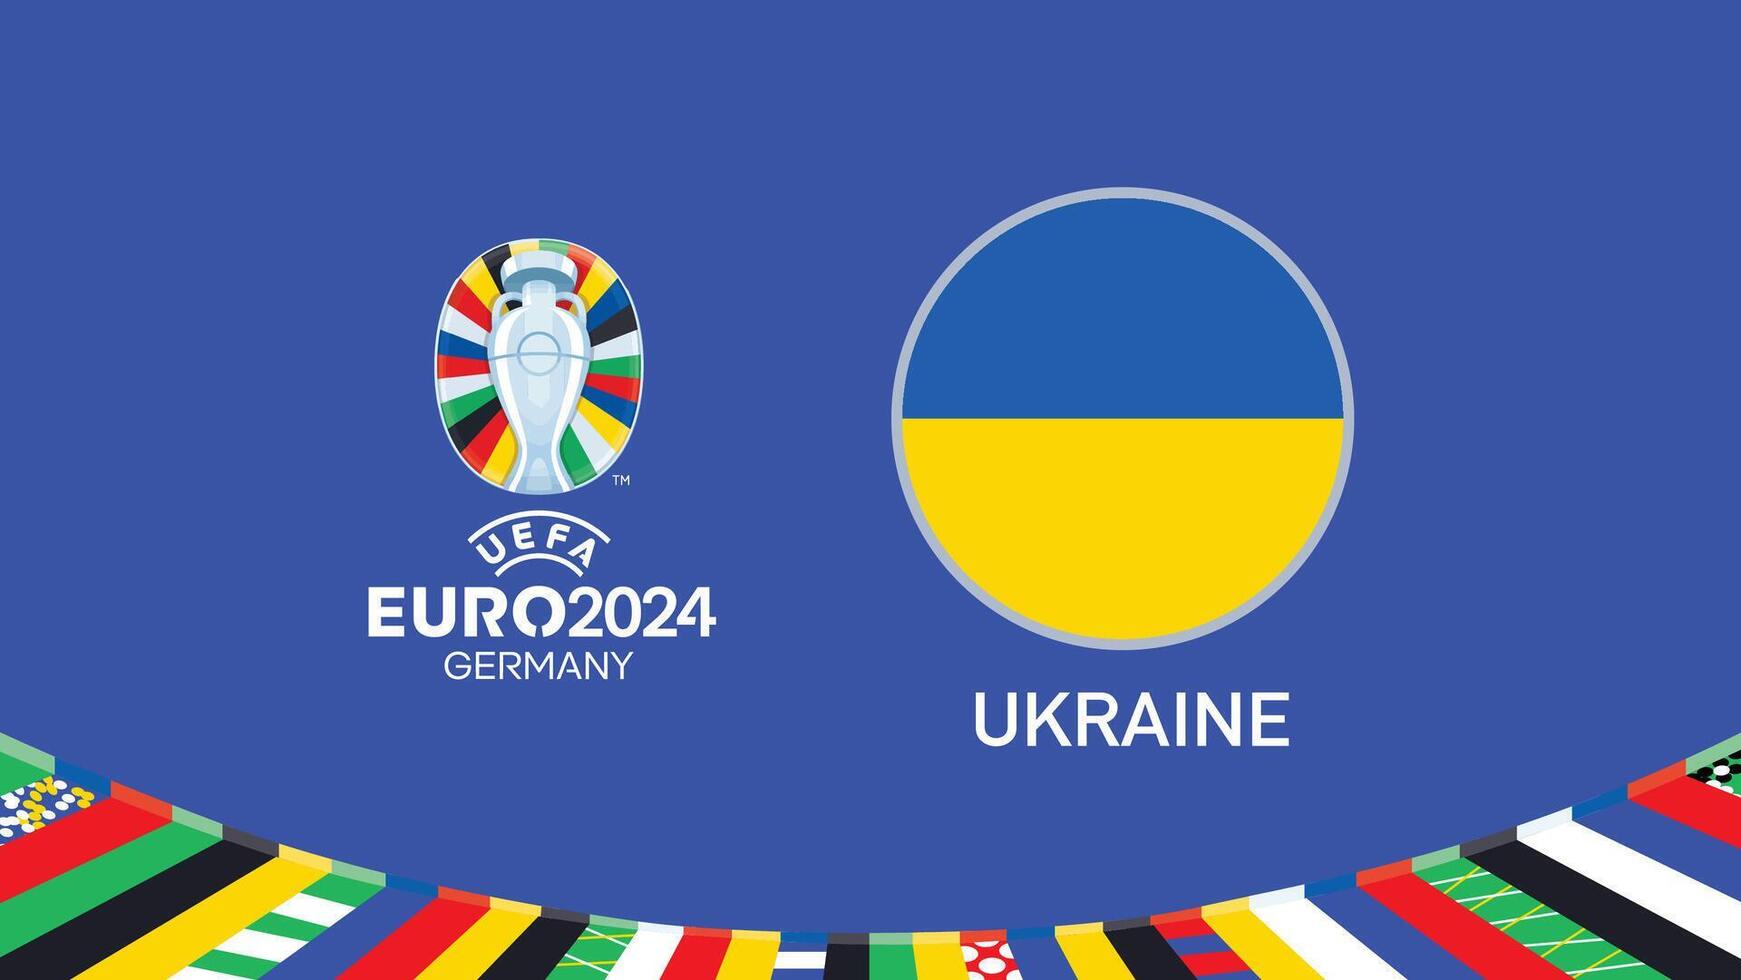 euro 2024 Allemagne Ukraine drapeau emblème équipes conception avec officiel symbole logo abstrait des pays européen Football illustration vecteur